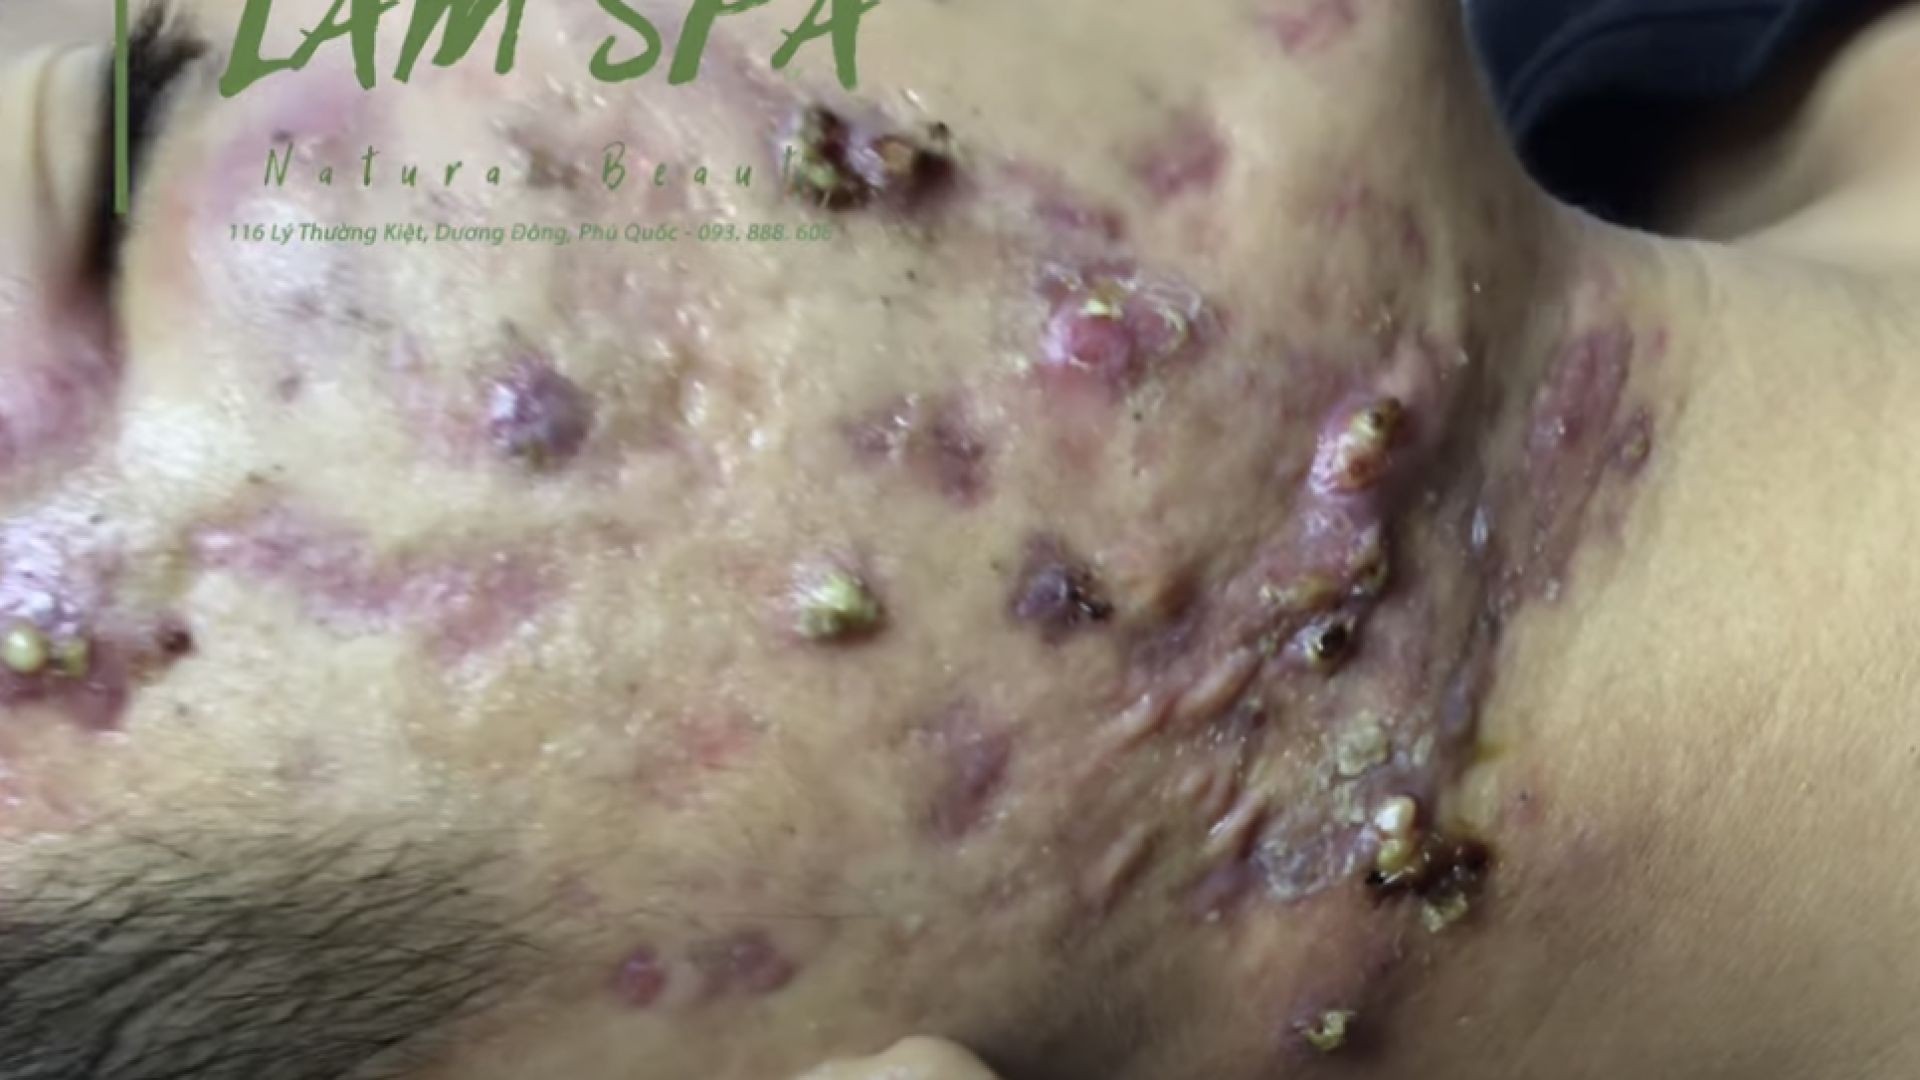 Treatment of acne pustules, severe inflammation | Điều trị mụn mủ viêm nặng | LAMSPA PHU QUOC | L P1